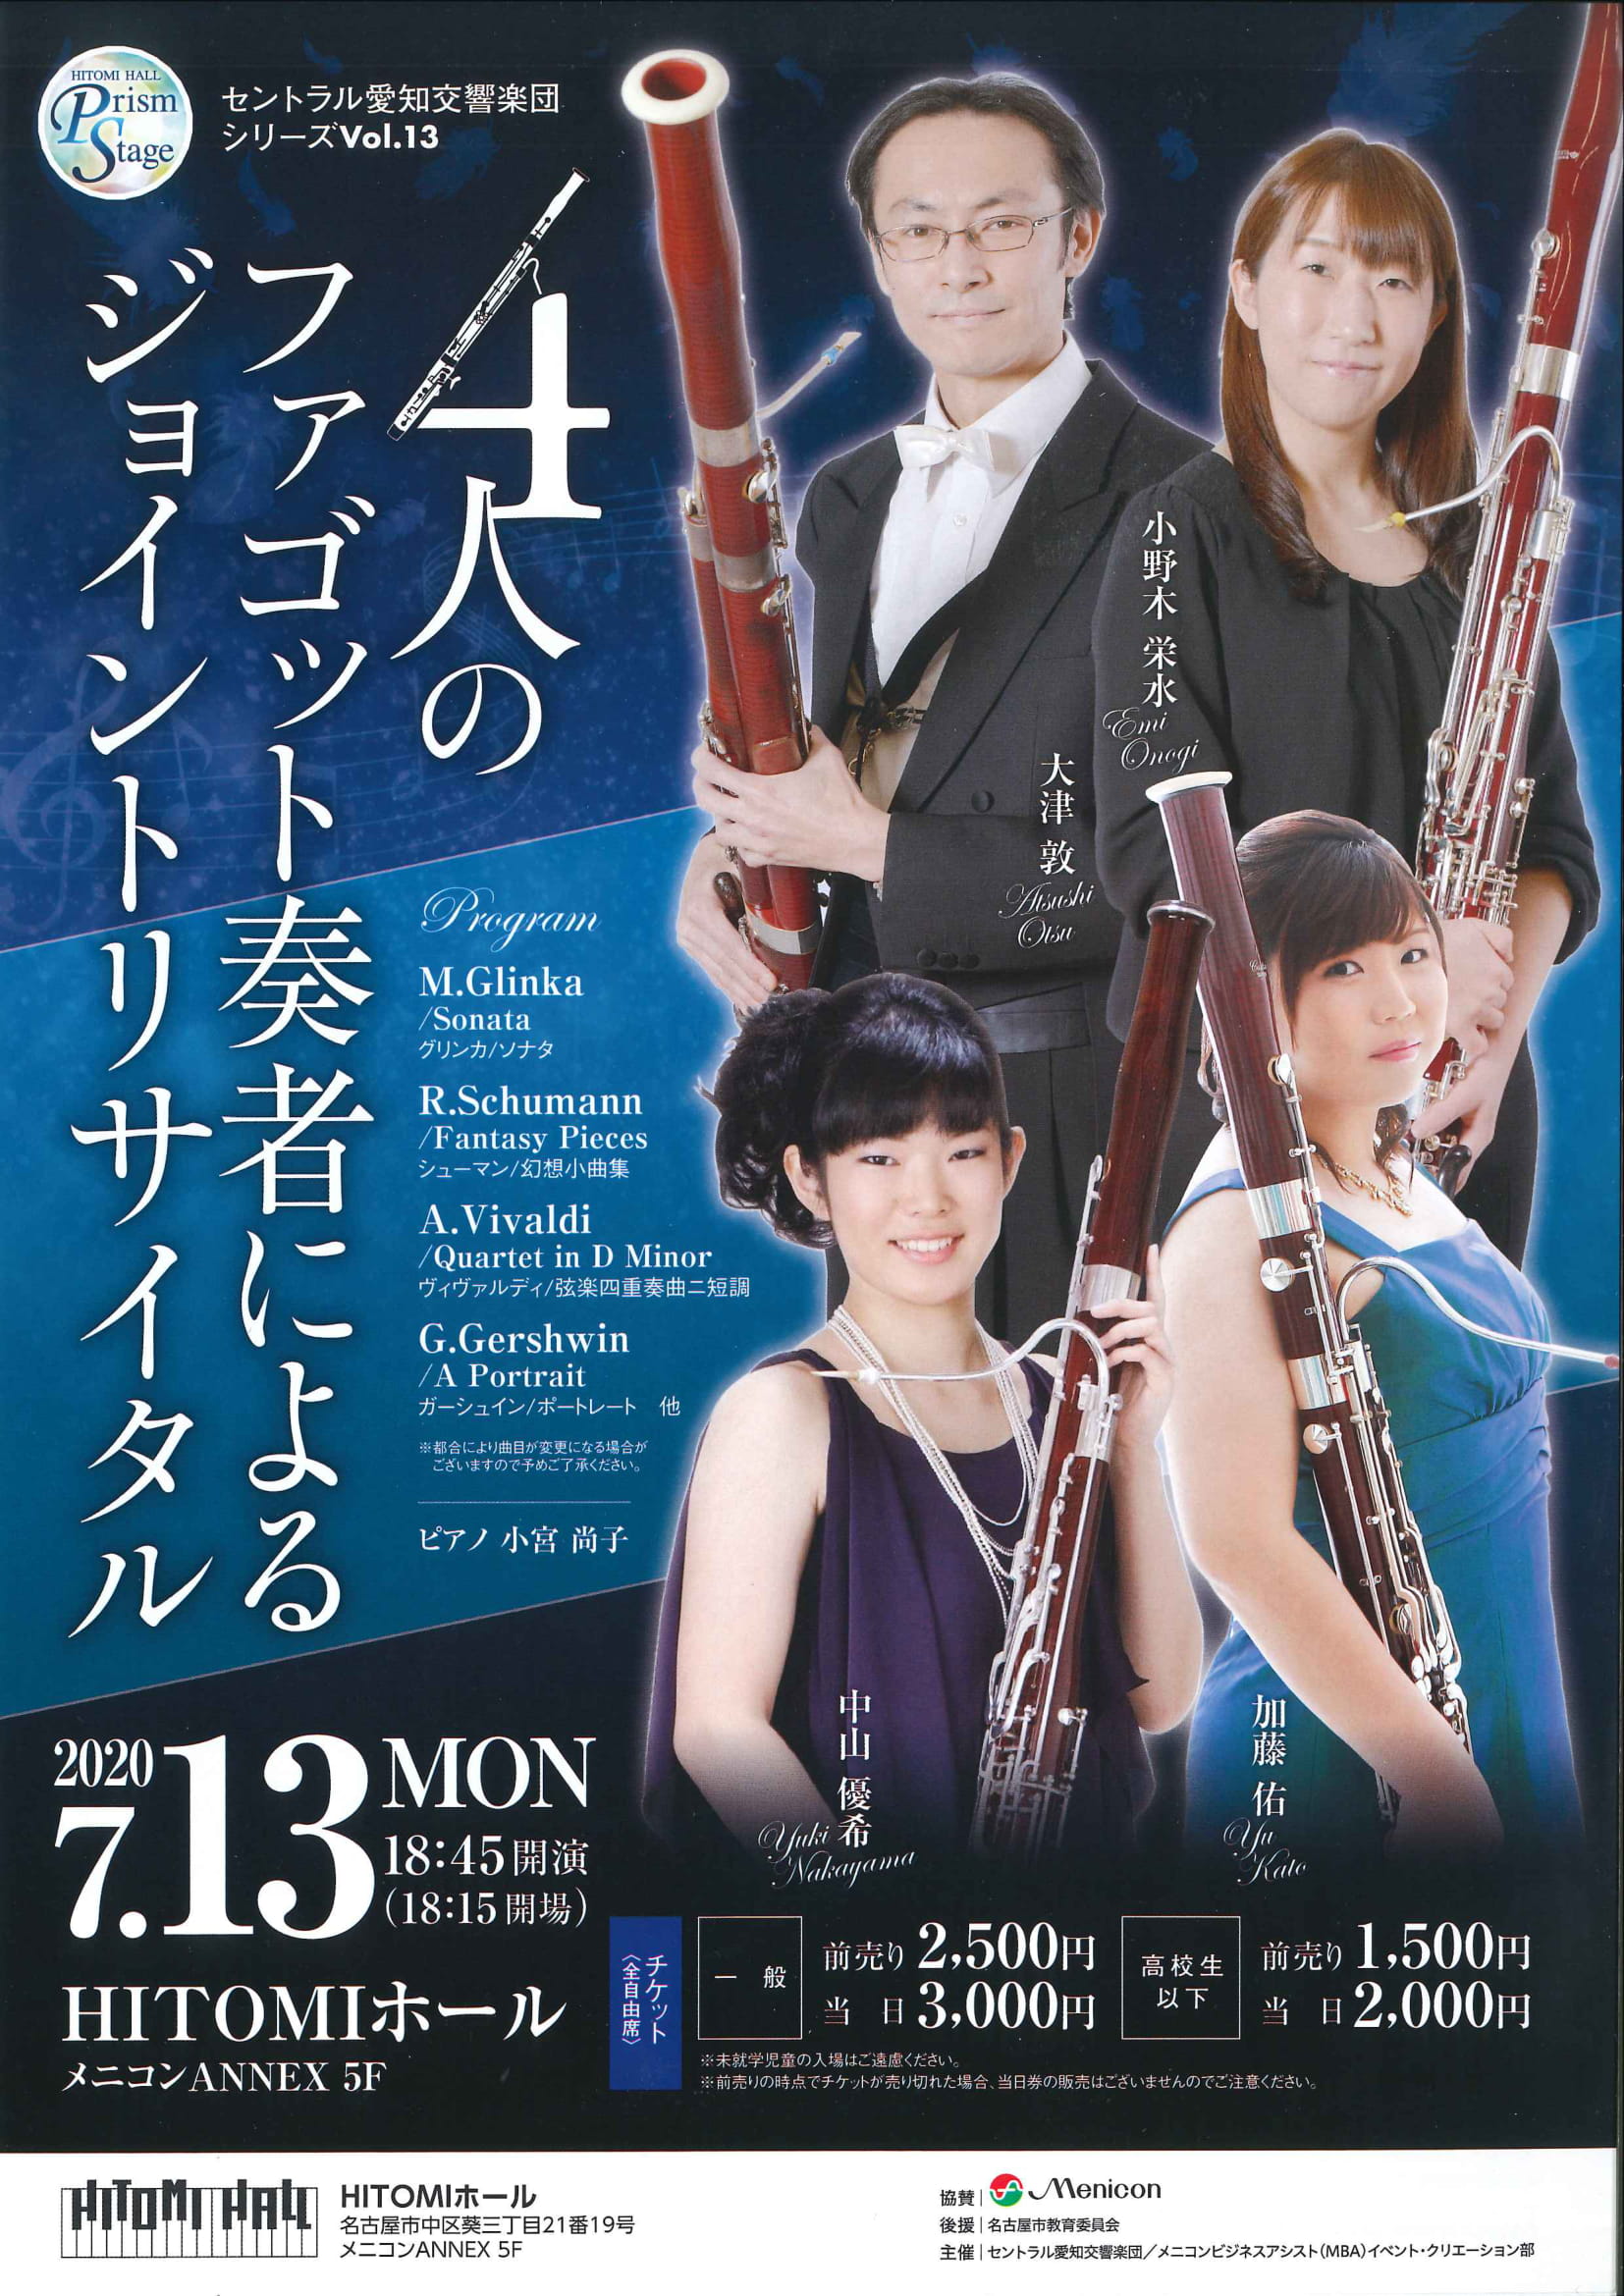 HITOMIホールプリズムステージ セントラル愛知交響楽団シリーズVol.13『4人のファゴット奏者によるジョイントリサイタル』